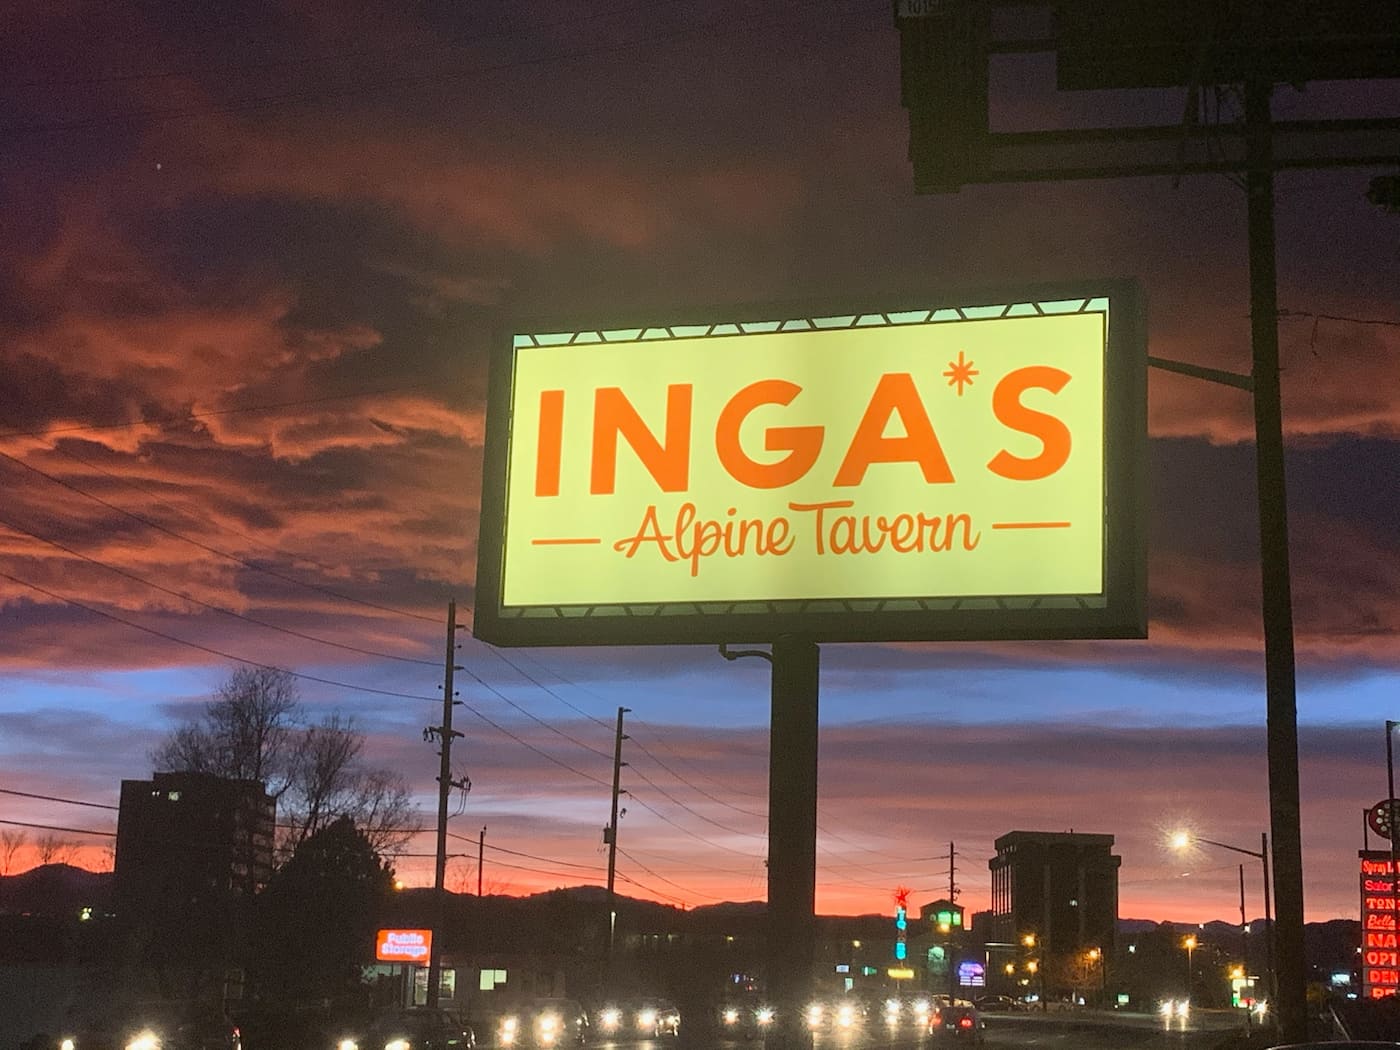 Sign outside Inga's Alpine Tavern